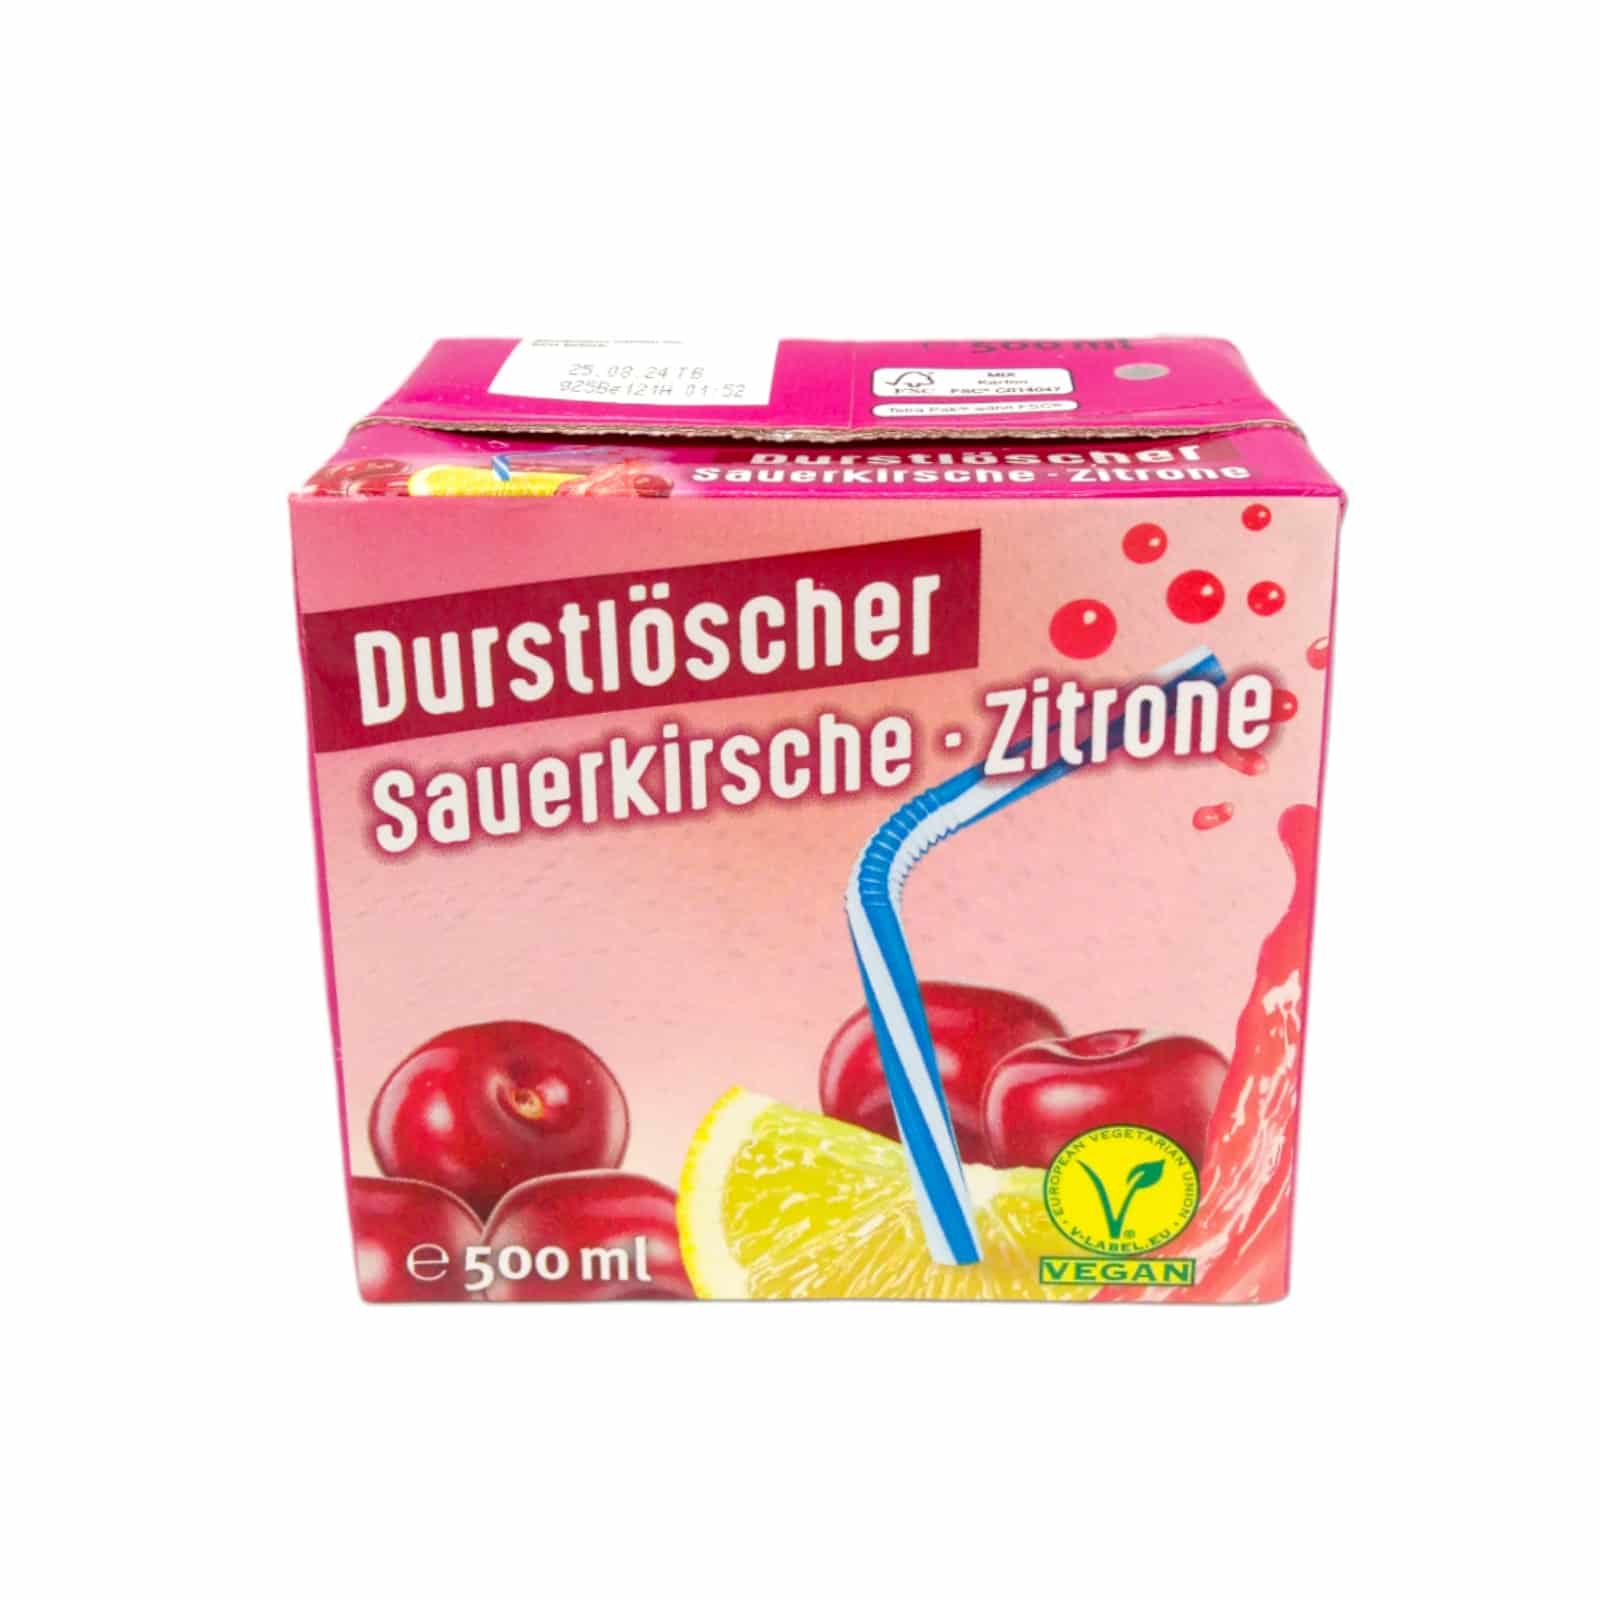 Durstlöscher Sauerkirsche - Zitrone 0,5l